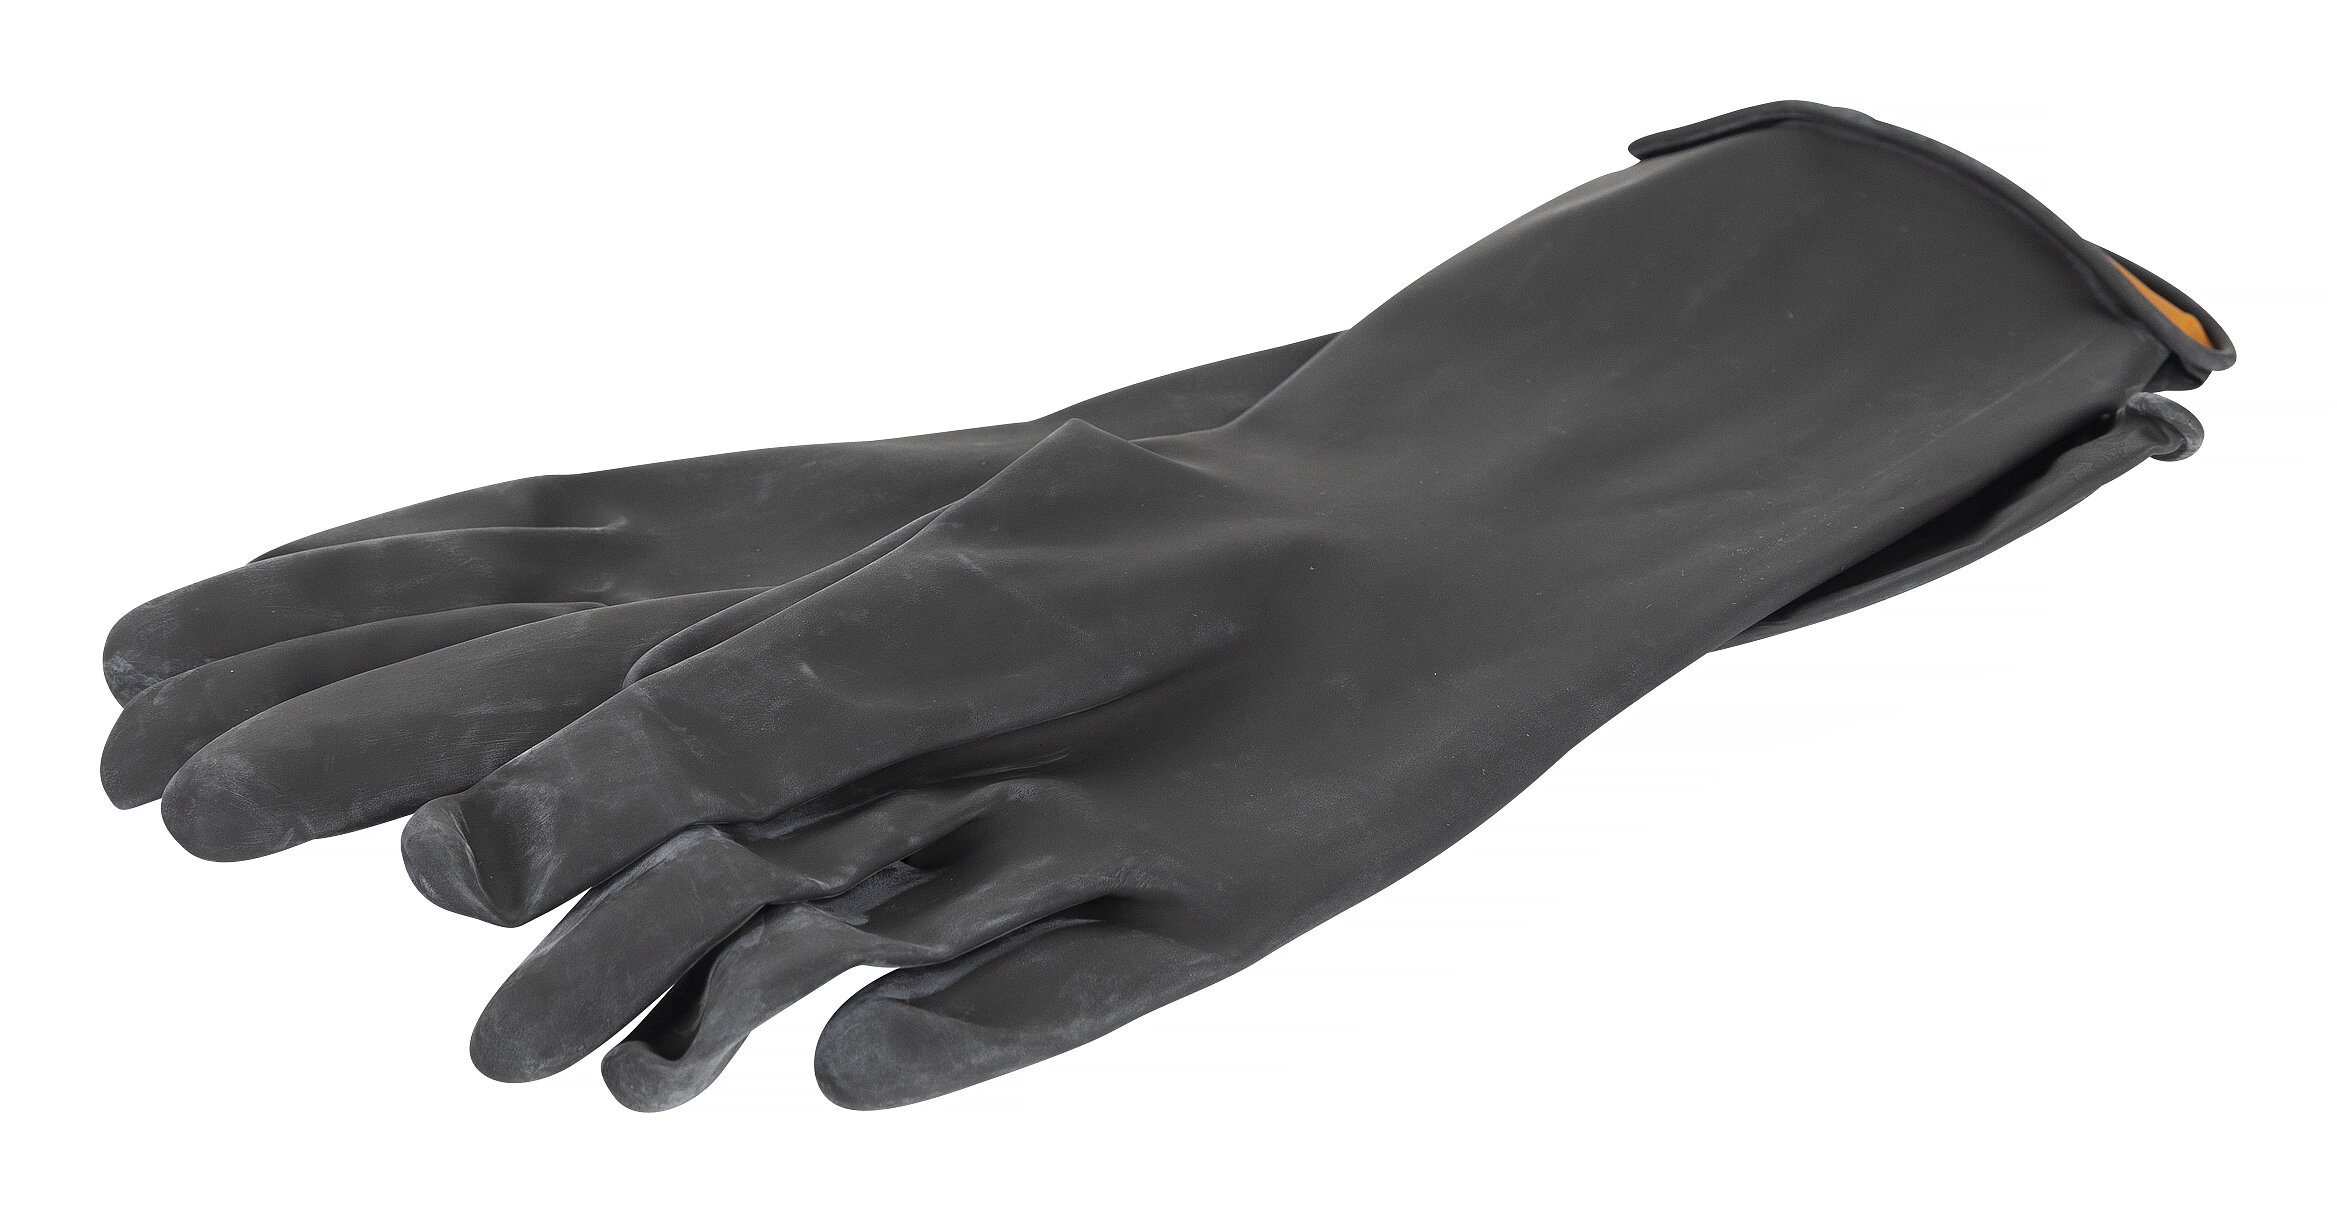 Køb PELA Handsker til minisandblæser hos Verktygsboden